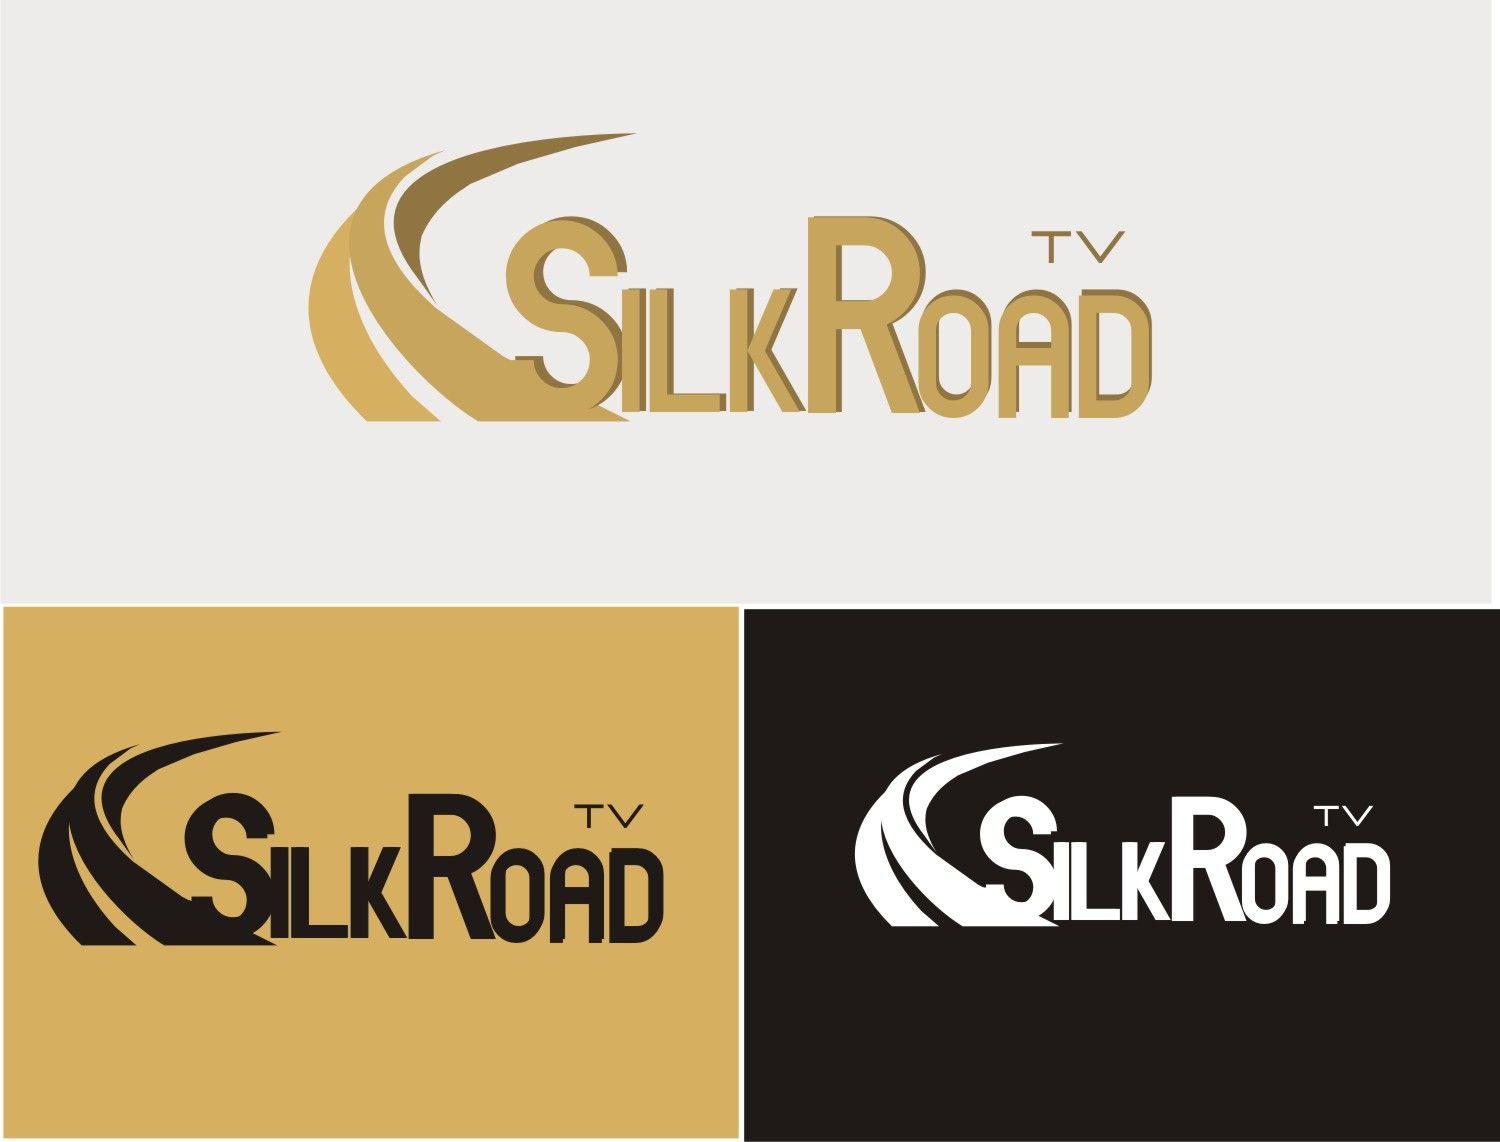 Silkroad Logo - Professional, Bold, Television Station Logo Design for Silk Road TV ...